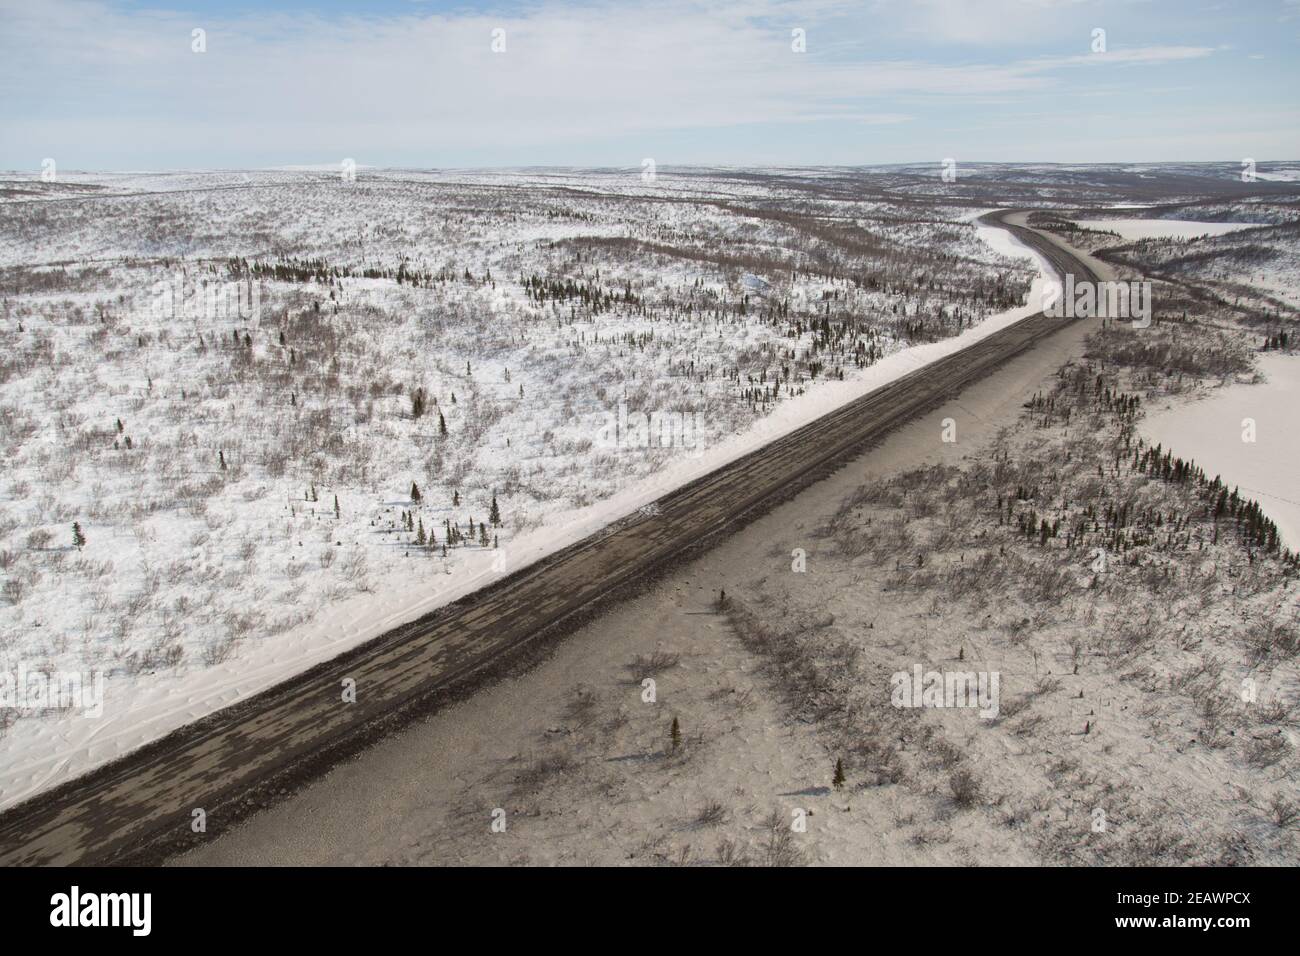 Vue aérienne en hiver du gravier de la route Inuvik-Tuktoyaktuk depuis l'extrémité sud, Territoires du Nord-Ouest, l'Arctique canadien. Banque D'Images